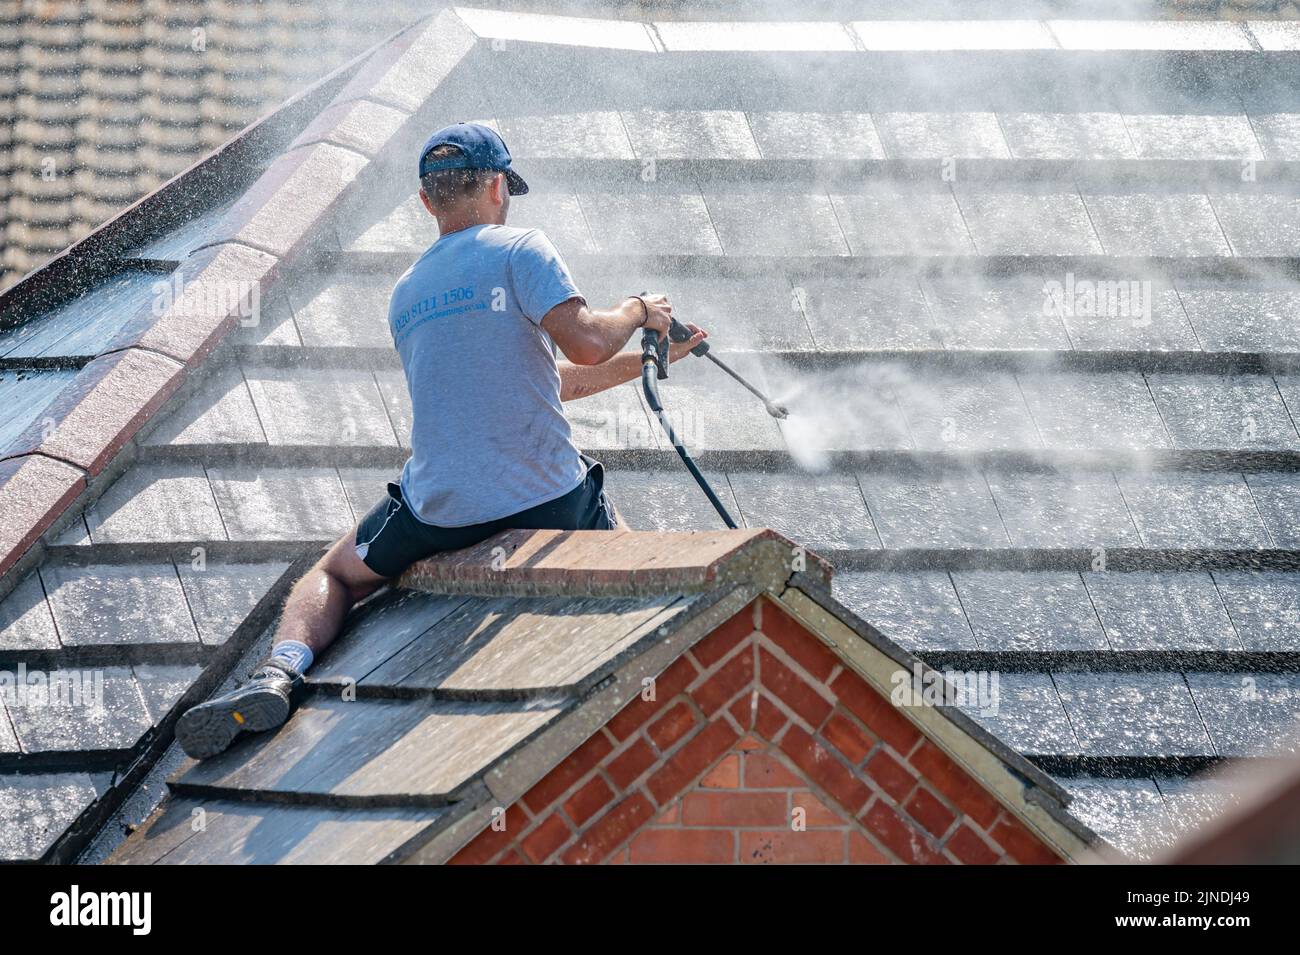 Mann sitzt auf einem Ziegeldach eines Hauses, benutzt einen Hochdruckreiniger an einem Schlauch, feuert einen Wasserstrahl ab, um das Dach und die Fliesen zu reinigen. Stockfoto